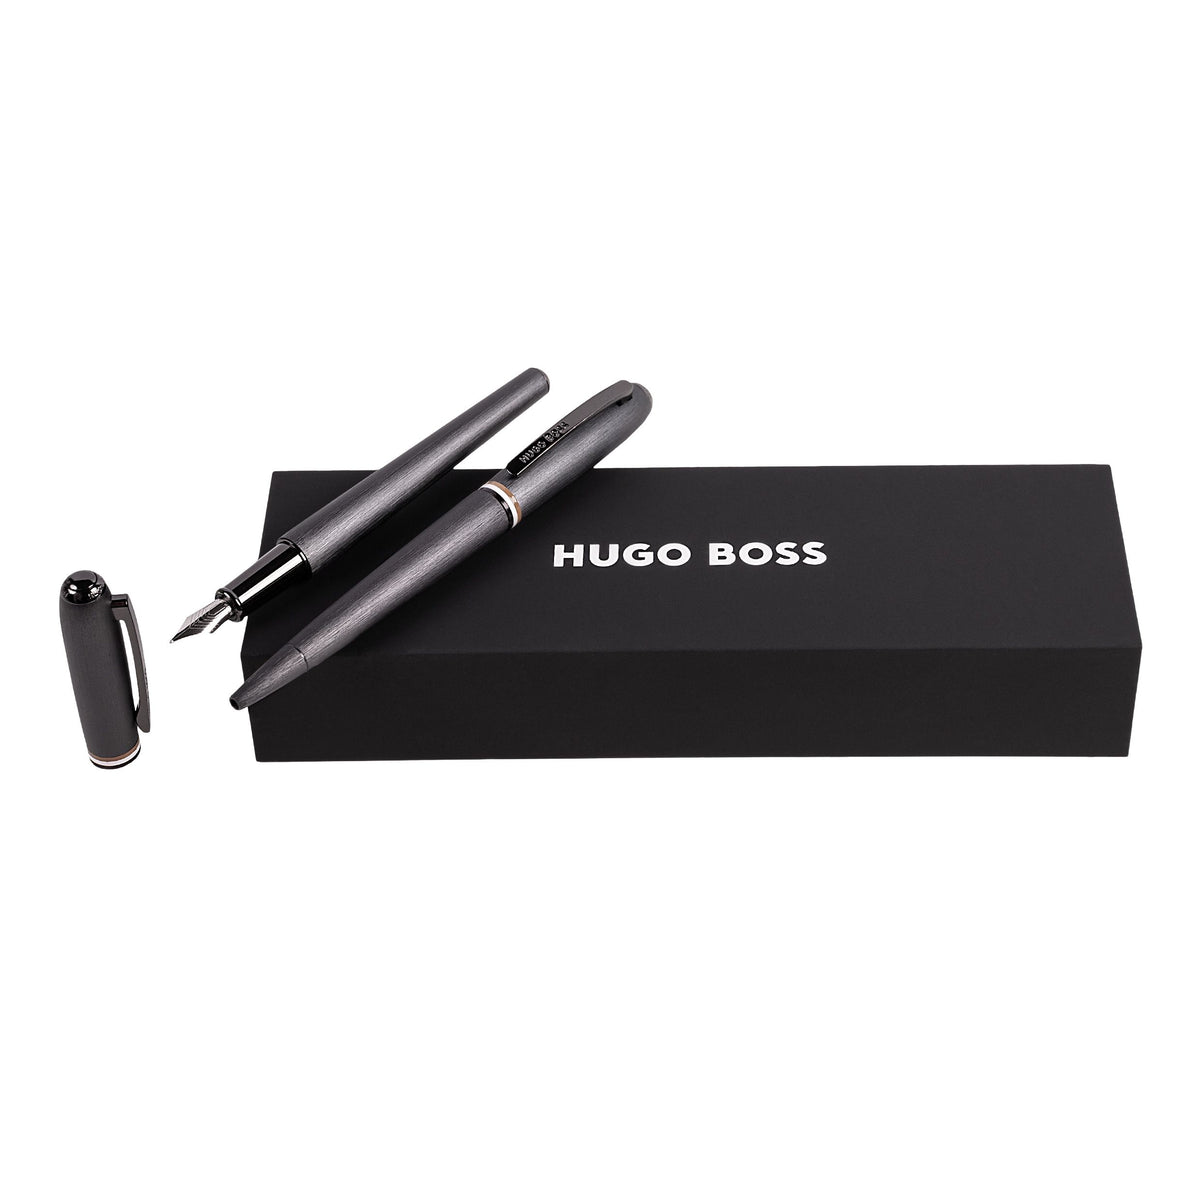 HUGO BOSS Pen Set Contour iconic | Ballpoint pen & Fountain pen ...